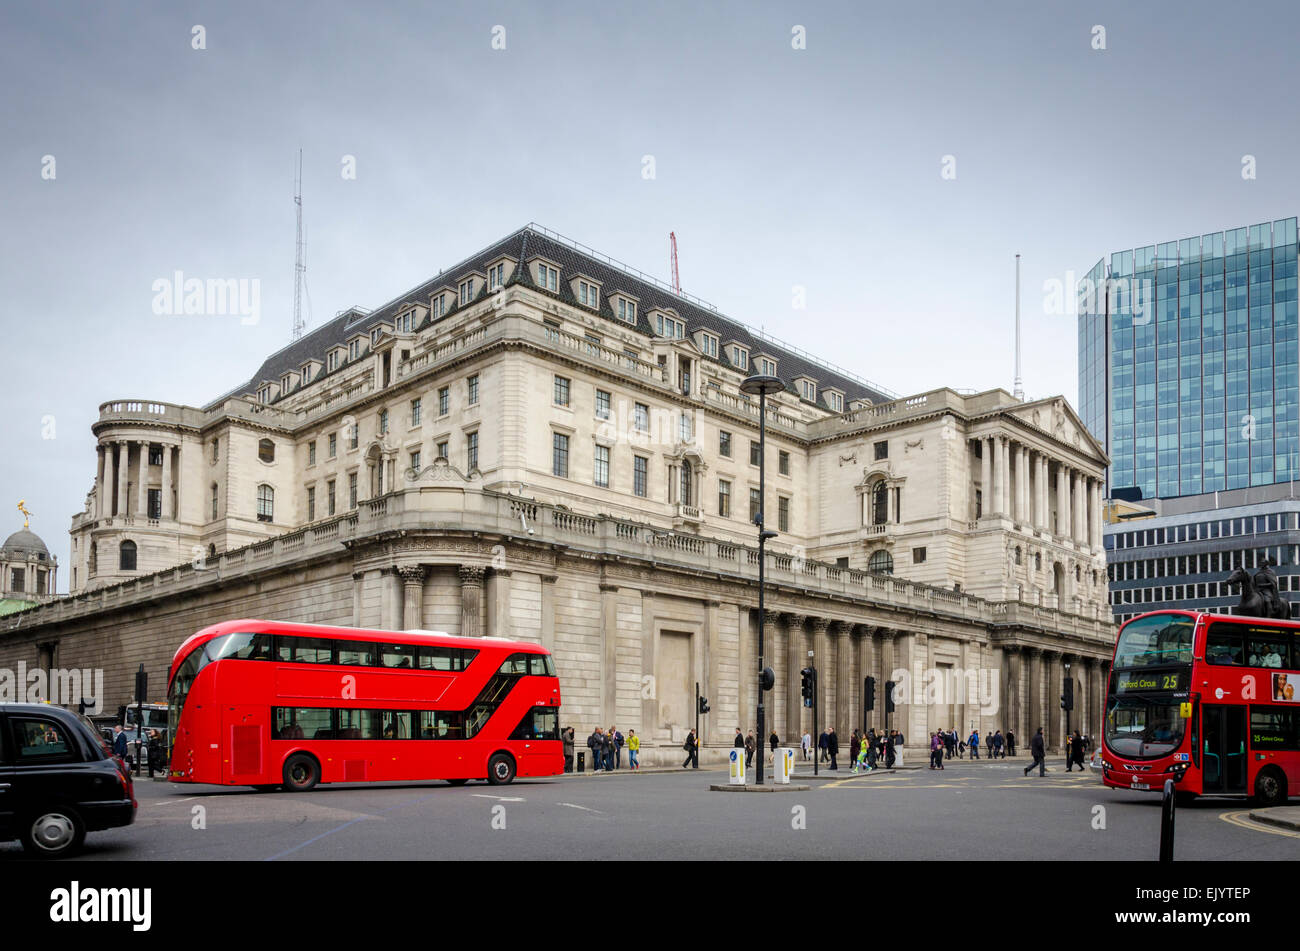 London bus rouge en face de la Banque d'Angleterre, Threadneedle Street, City of London, UK Banque D'Images